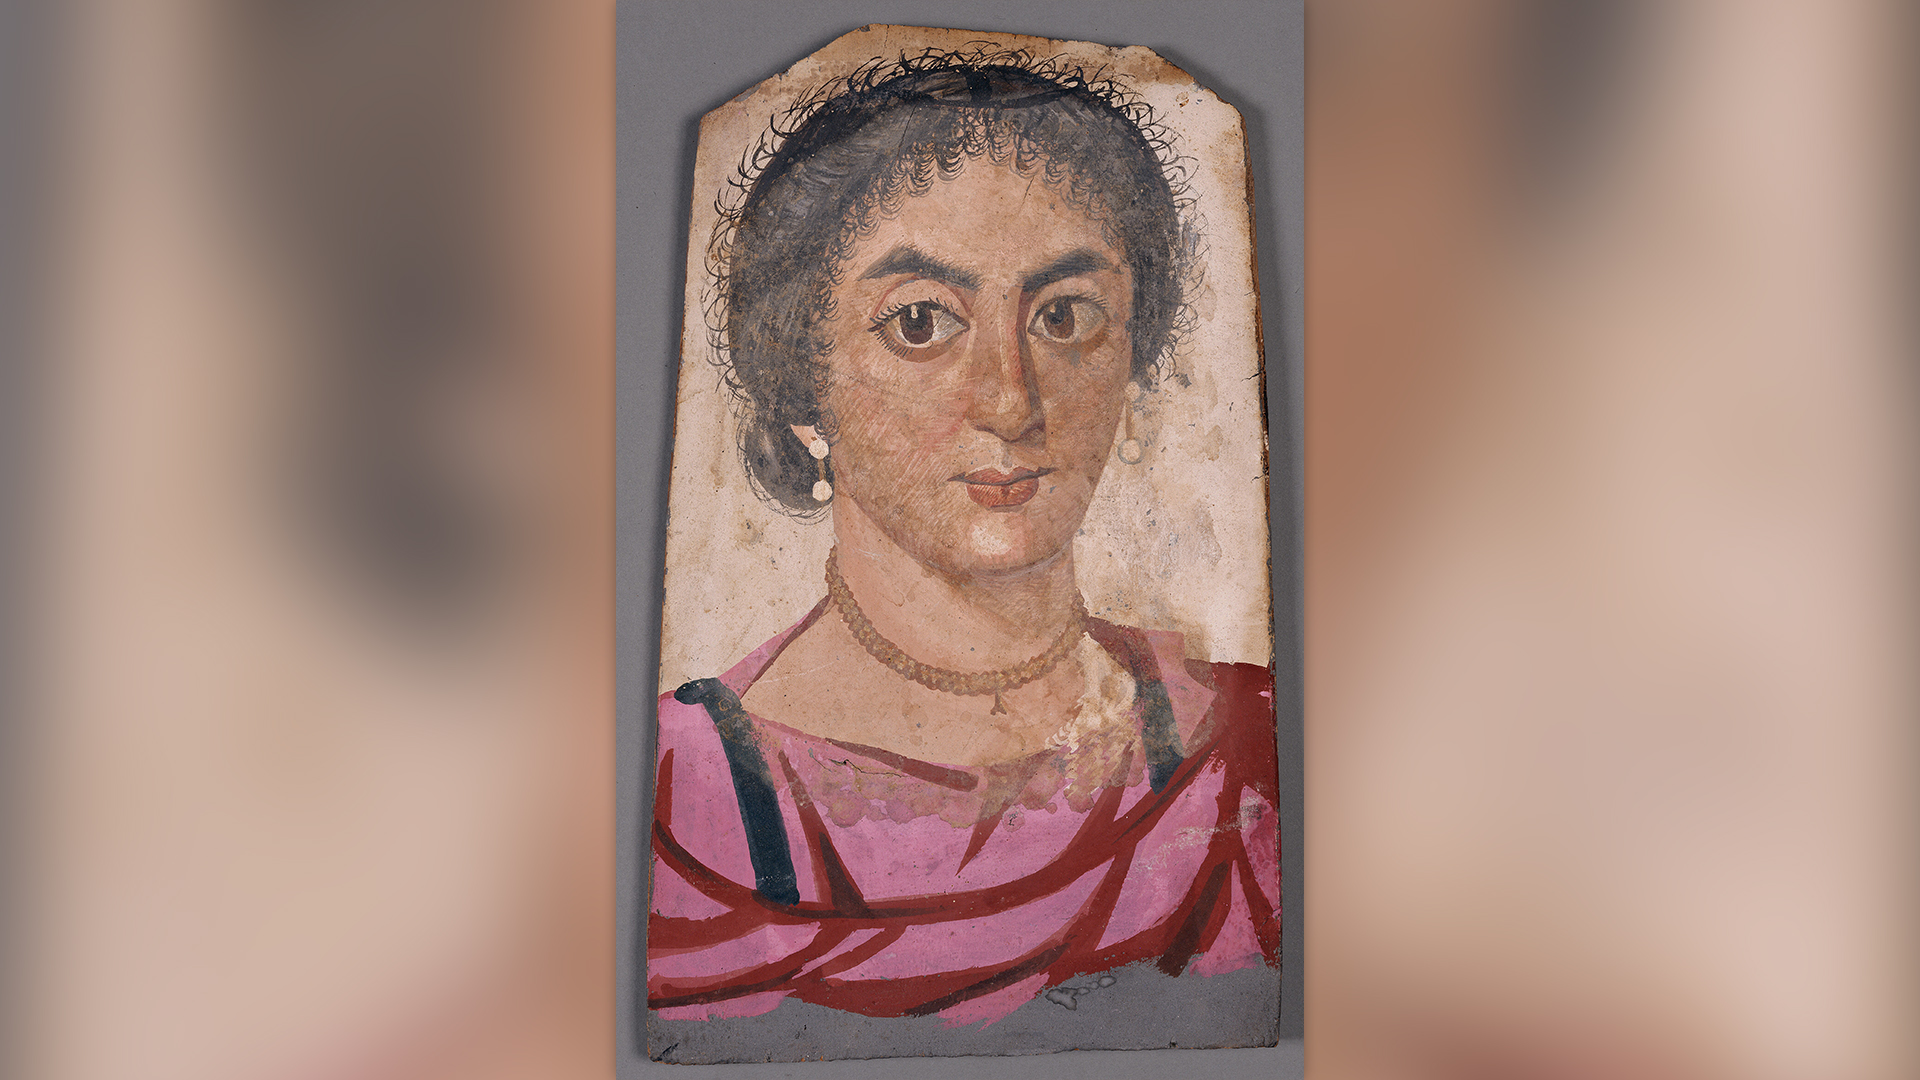 En este retrato, una mujer lleva aretes de perlas, un collar, una túnica rosa intenso y clavi negros, o tiras verticales de ornamentación.  Su cabello rizado está recogido en un moño.